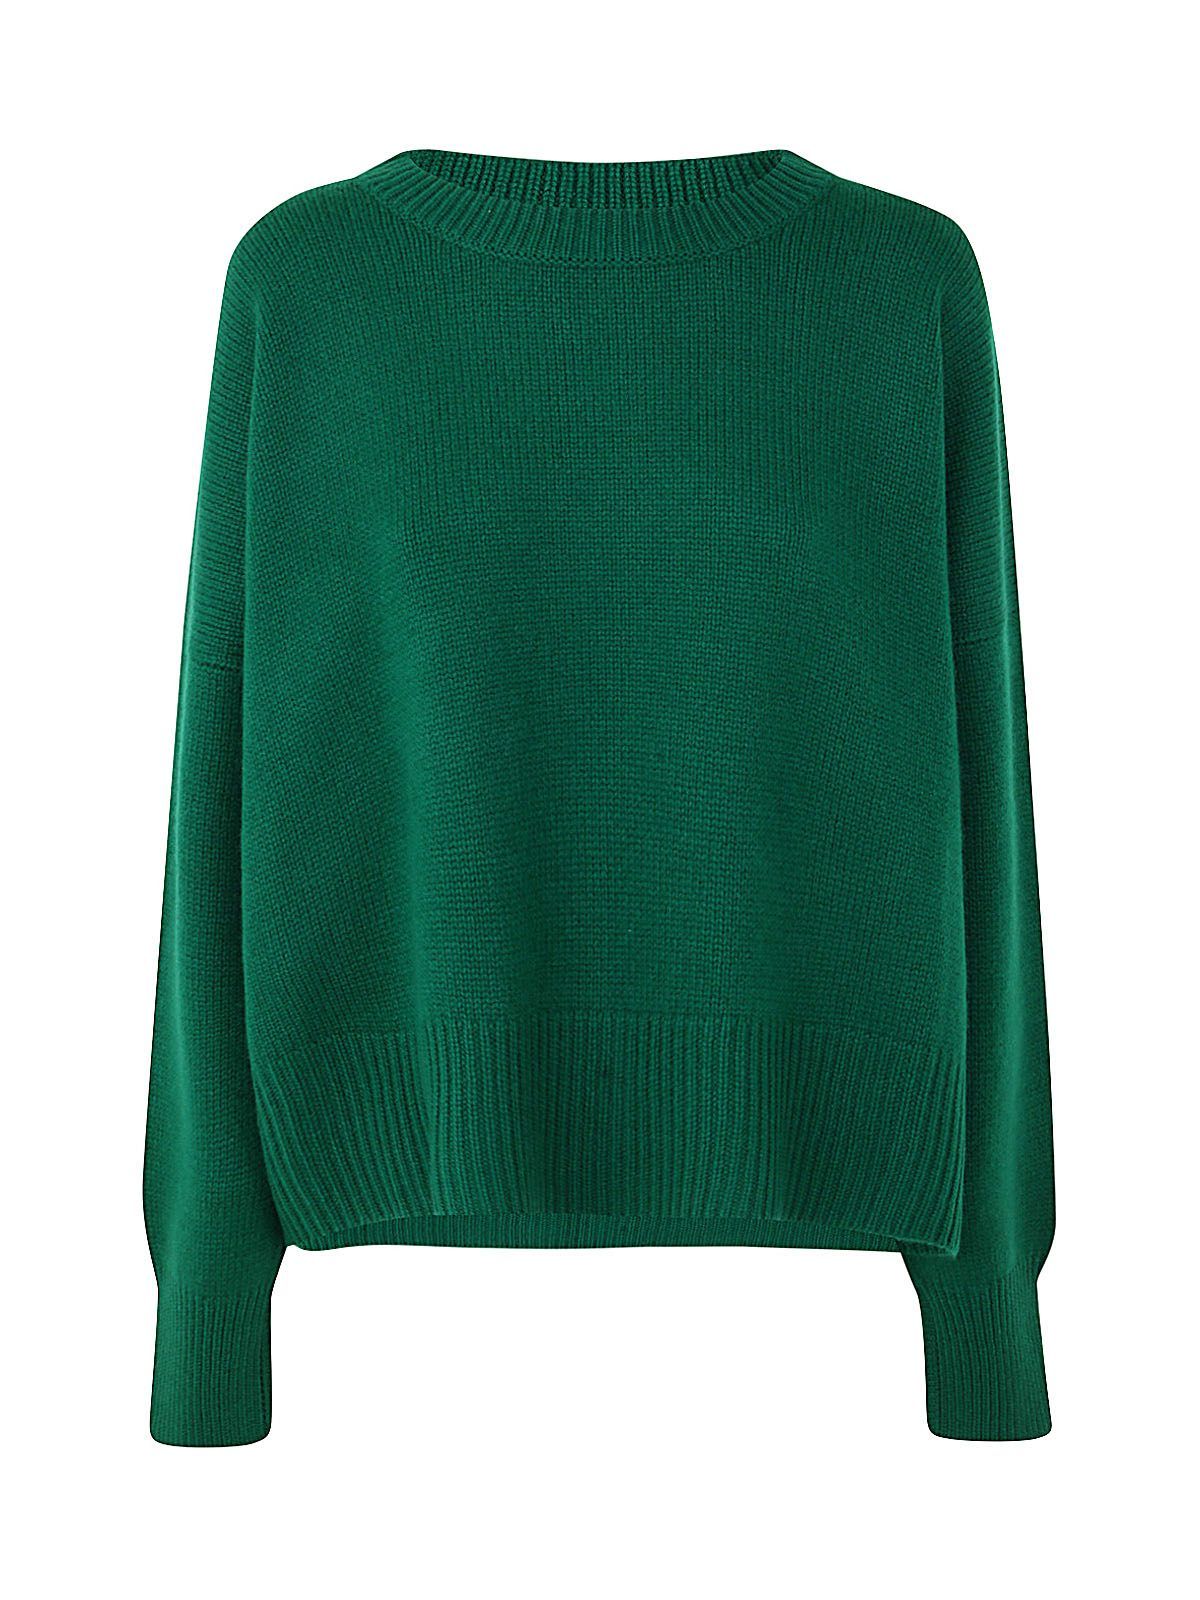 Oyuna Knitted Chunky Boxy Sweater